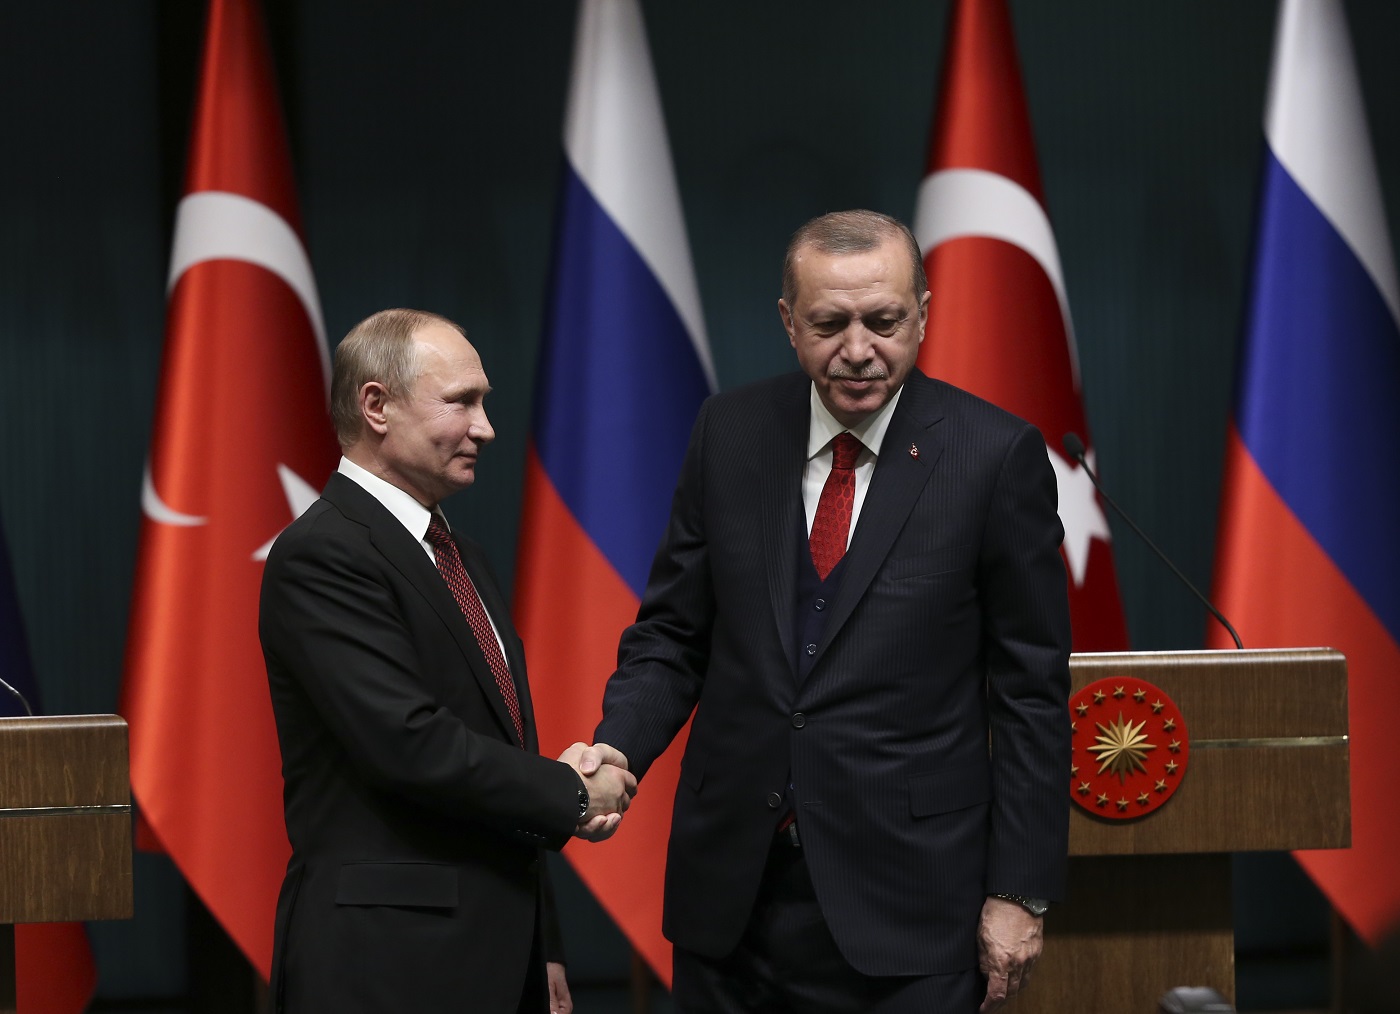 العلاقات التركية الروسية ومعضلة ثنائية التعاون والأزمات